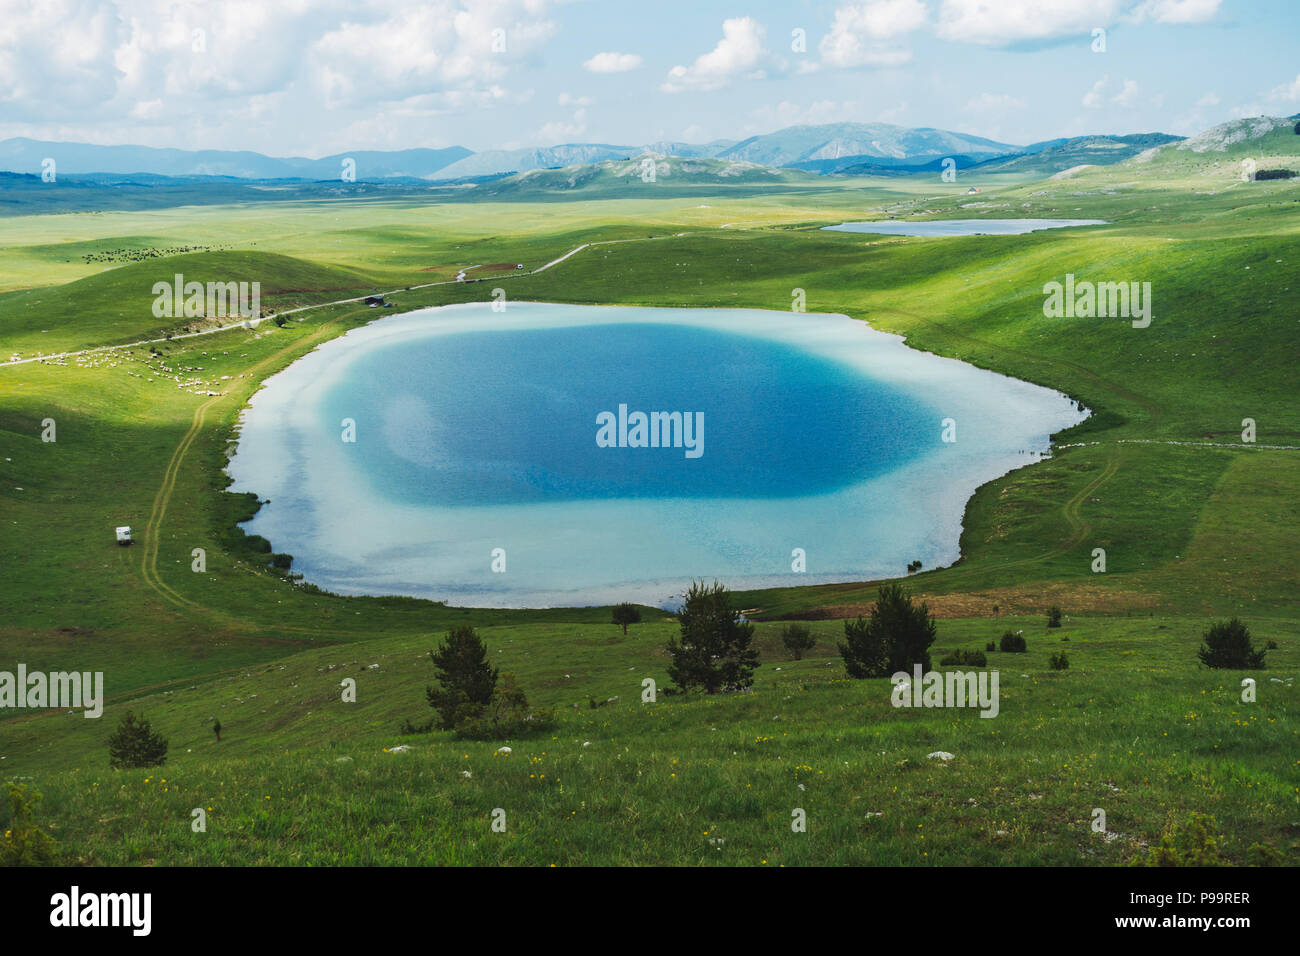 The contrasting blue hues of the Vražje jezero (Devil's Lake) in Durmitor National Park, Montenegro Stock Photo